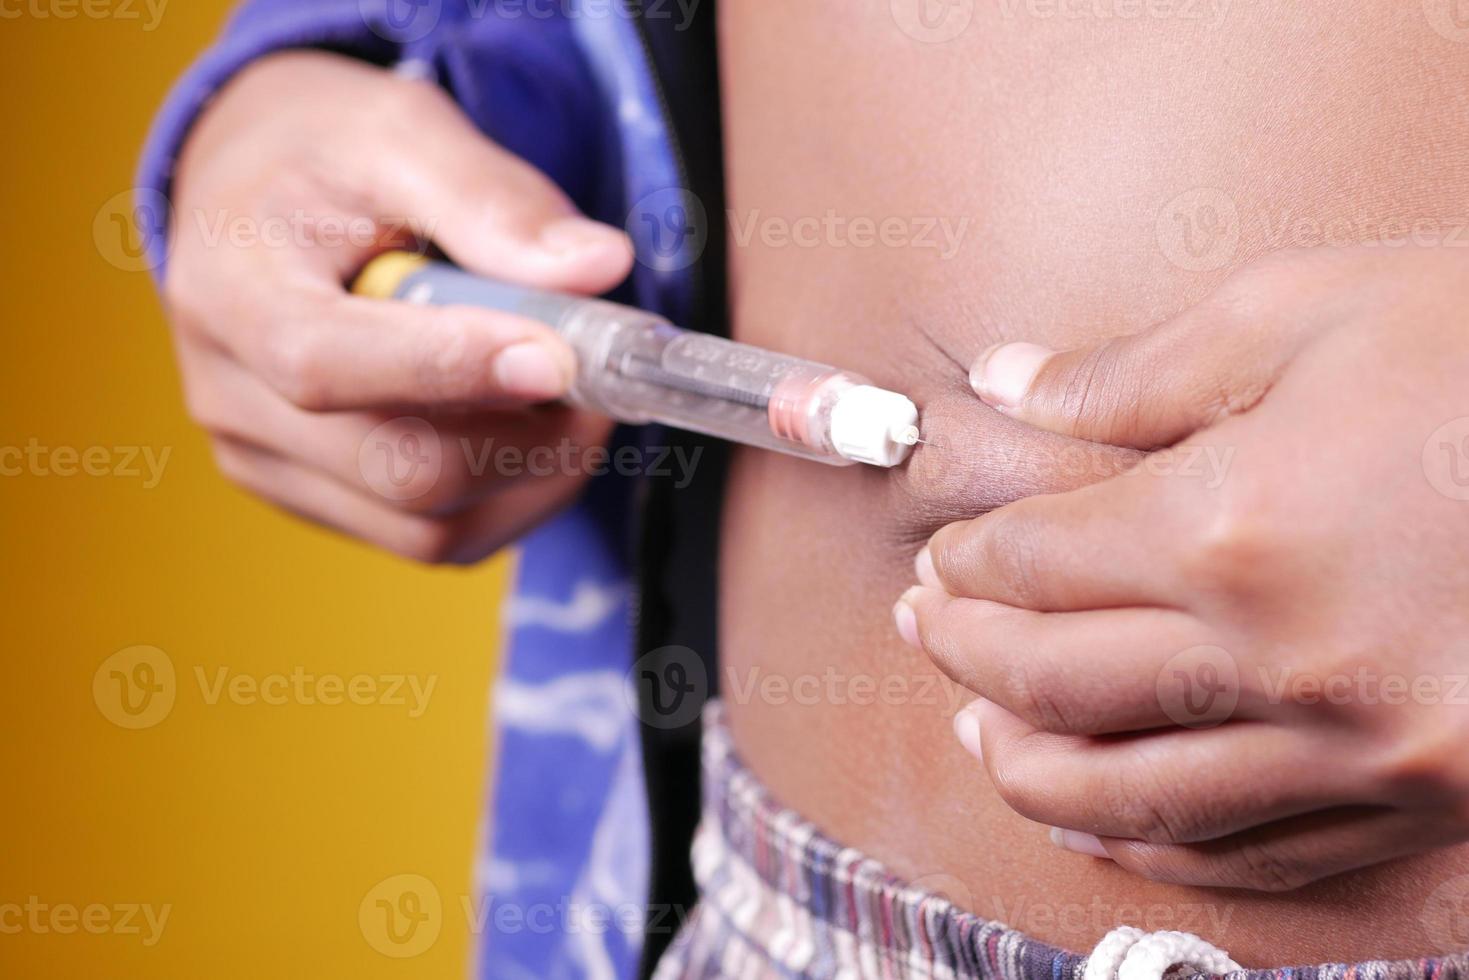 giovane, mano, usando, penna insulina, primo piano insulin foto